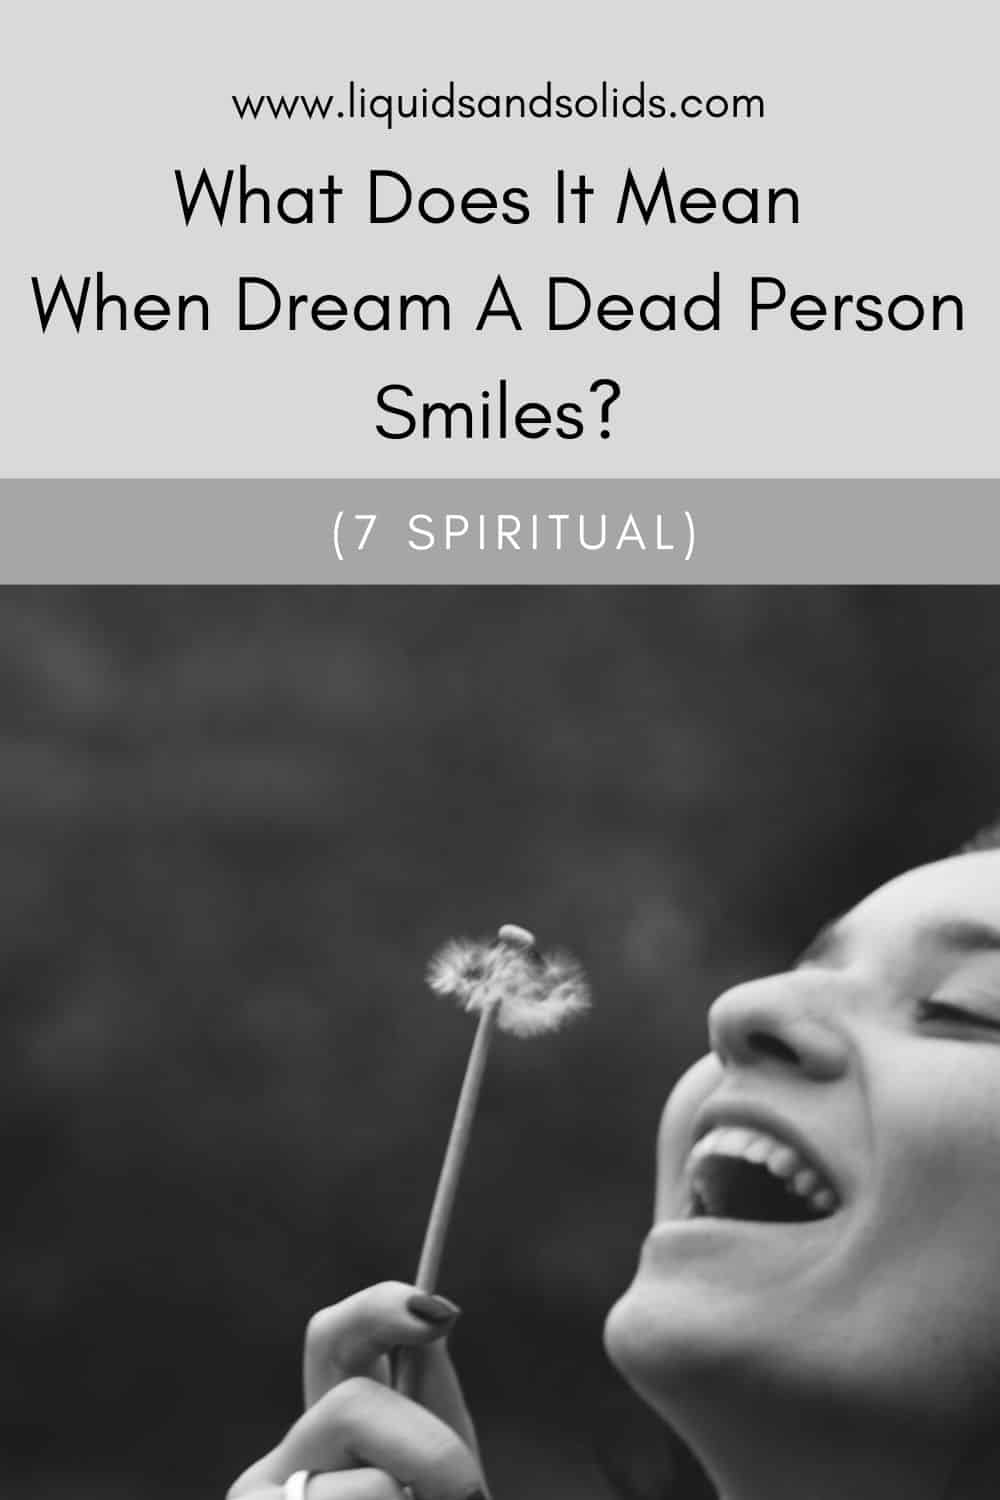  Hvad betyder det, når en død person smiler i drømmen? (7 spirituelle betydninger)